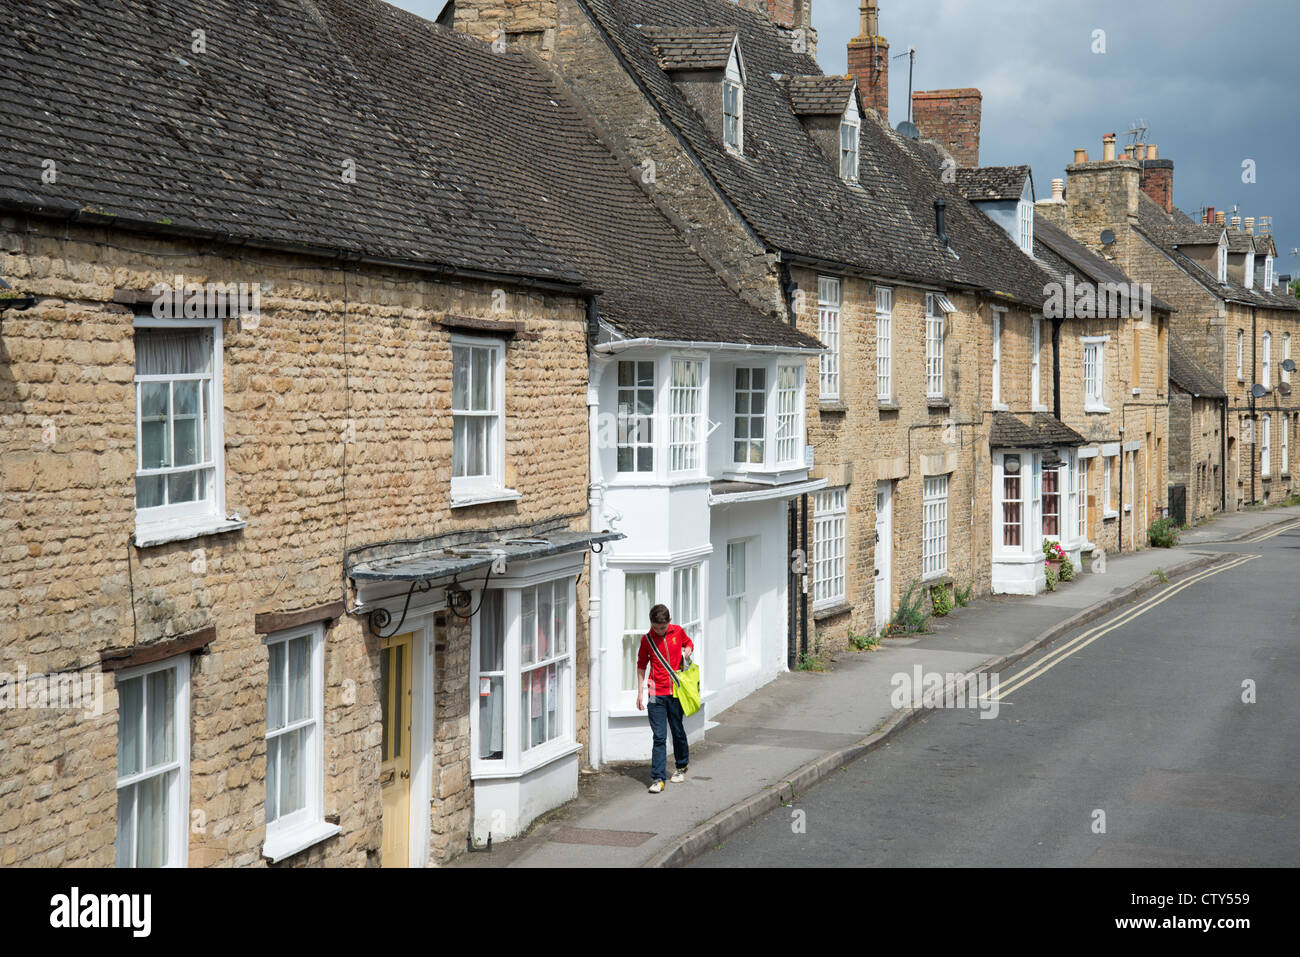 Rangée de cottages, Market Street, Chipping Norton, Oxfordshire, Angleterre, Royaume-Uni Banque D'Images